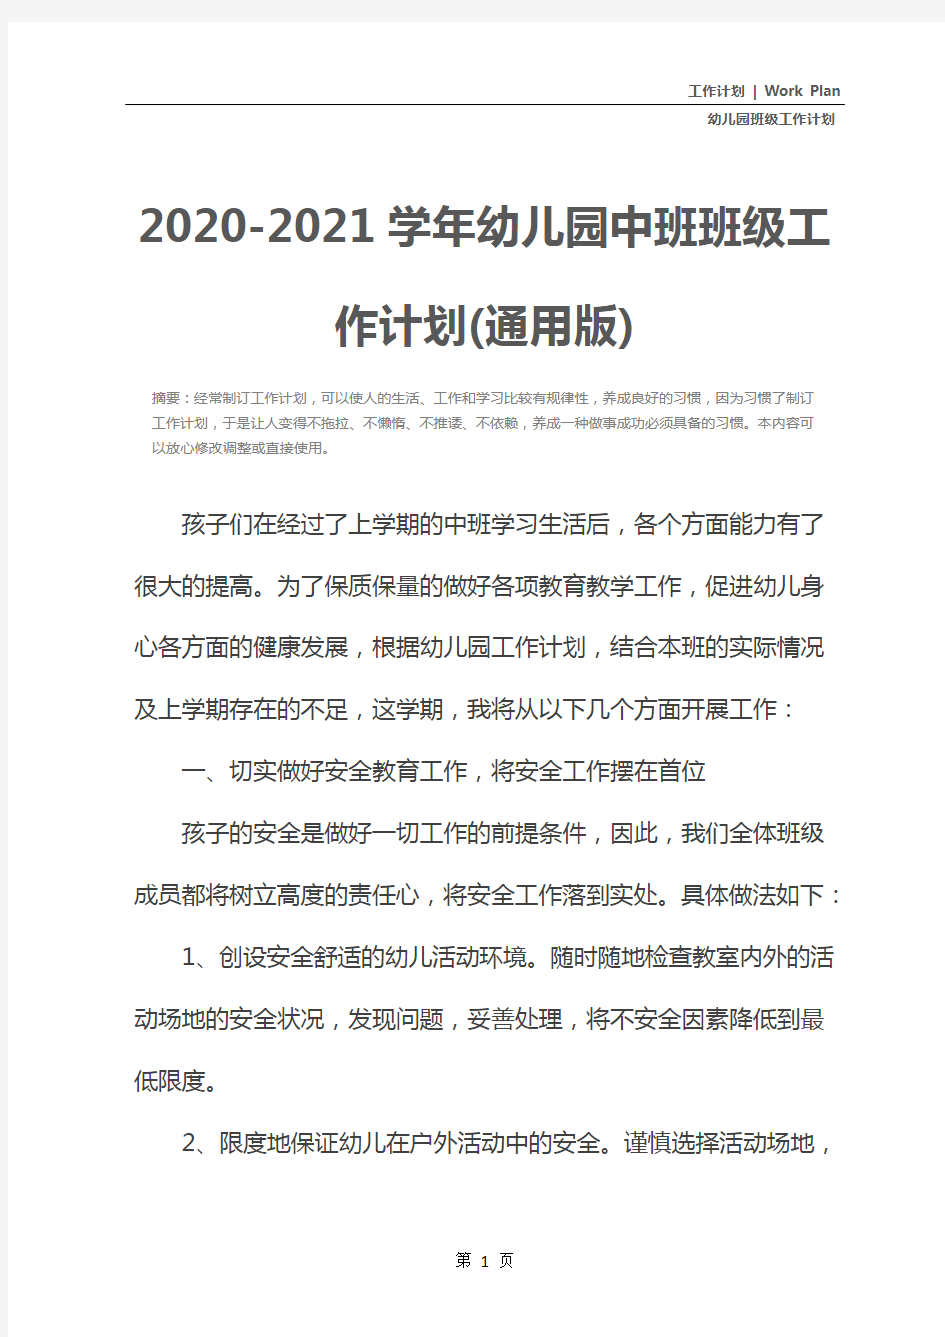 2020-2021学年幼儿园中班班级工作计划(通用版)